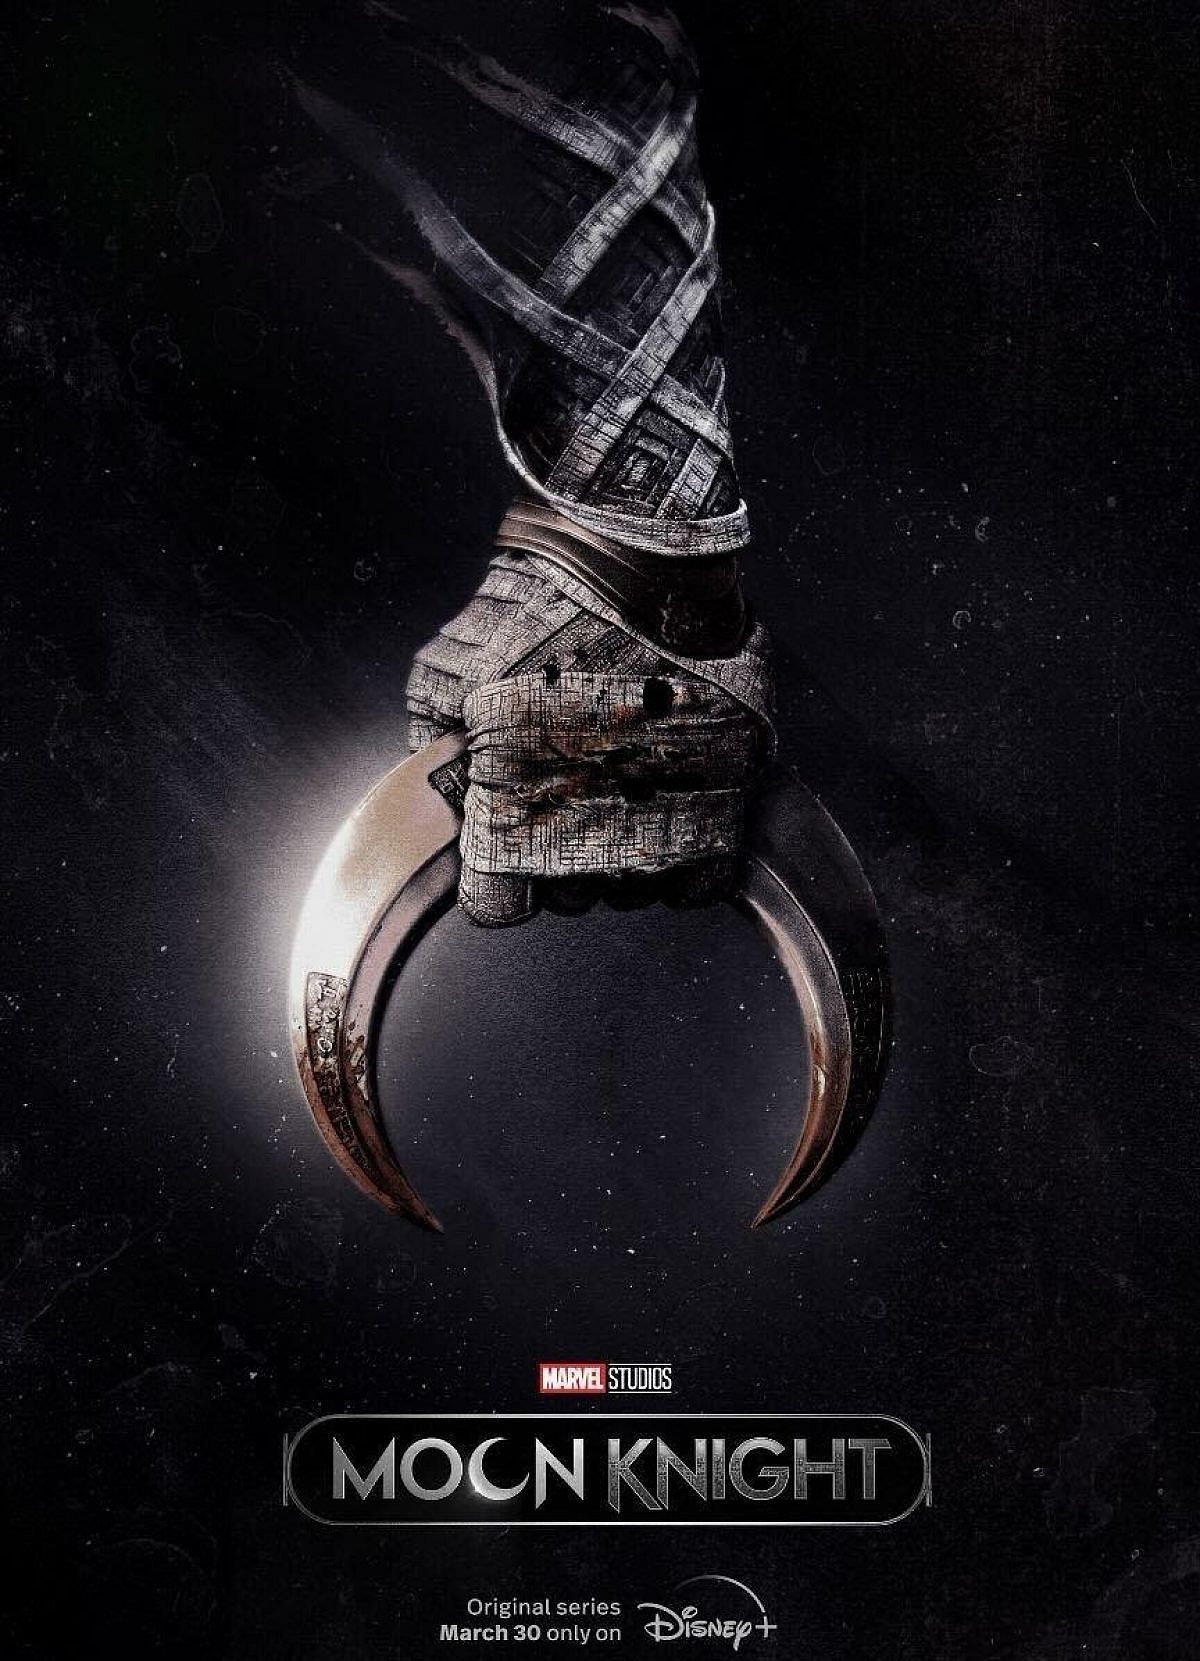 Moon Knight | Trailer com Oscar Isaac como Cavaleiro da Lua na série da Marvel Studios